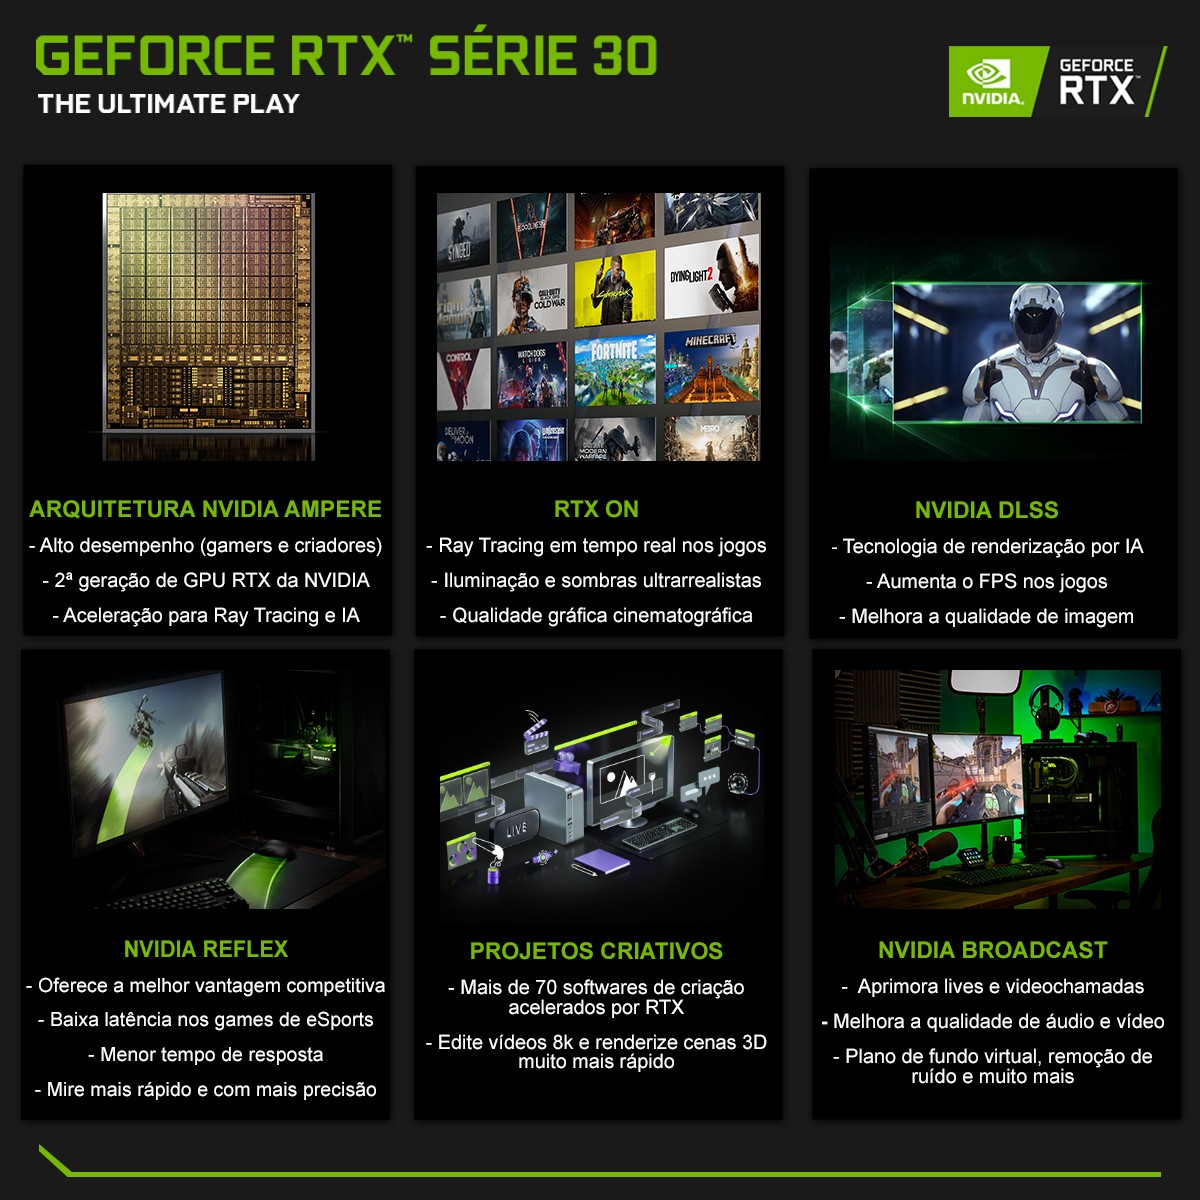 Placa de Vídeo Galax, GeForce, RTX 3090 EX Gaming, 1 Click OC, 24GB, GDDR6X, 384Bit, 